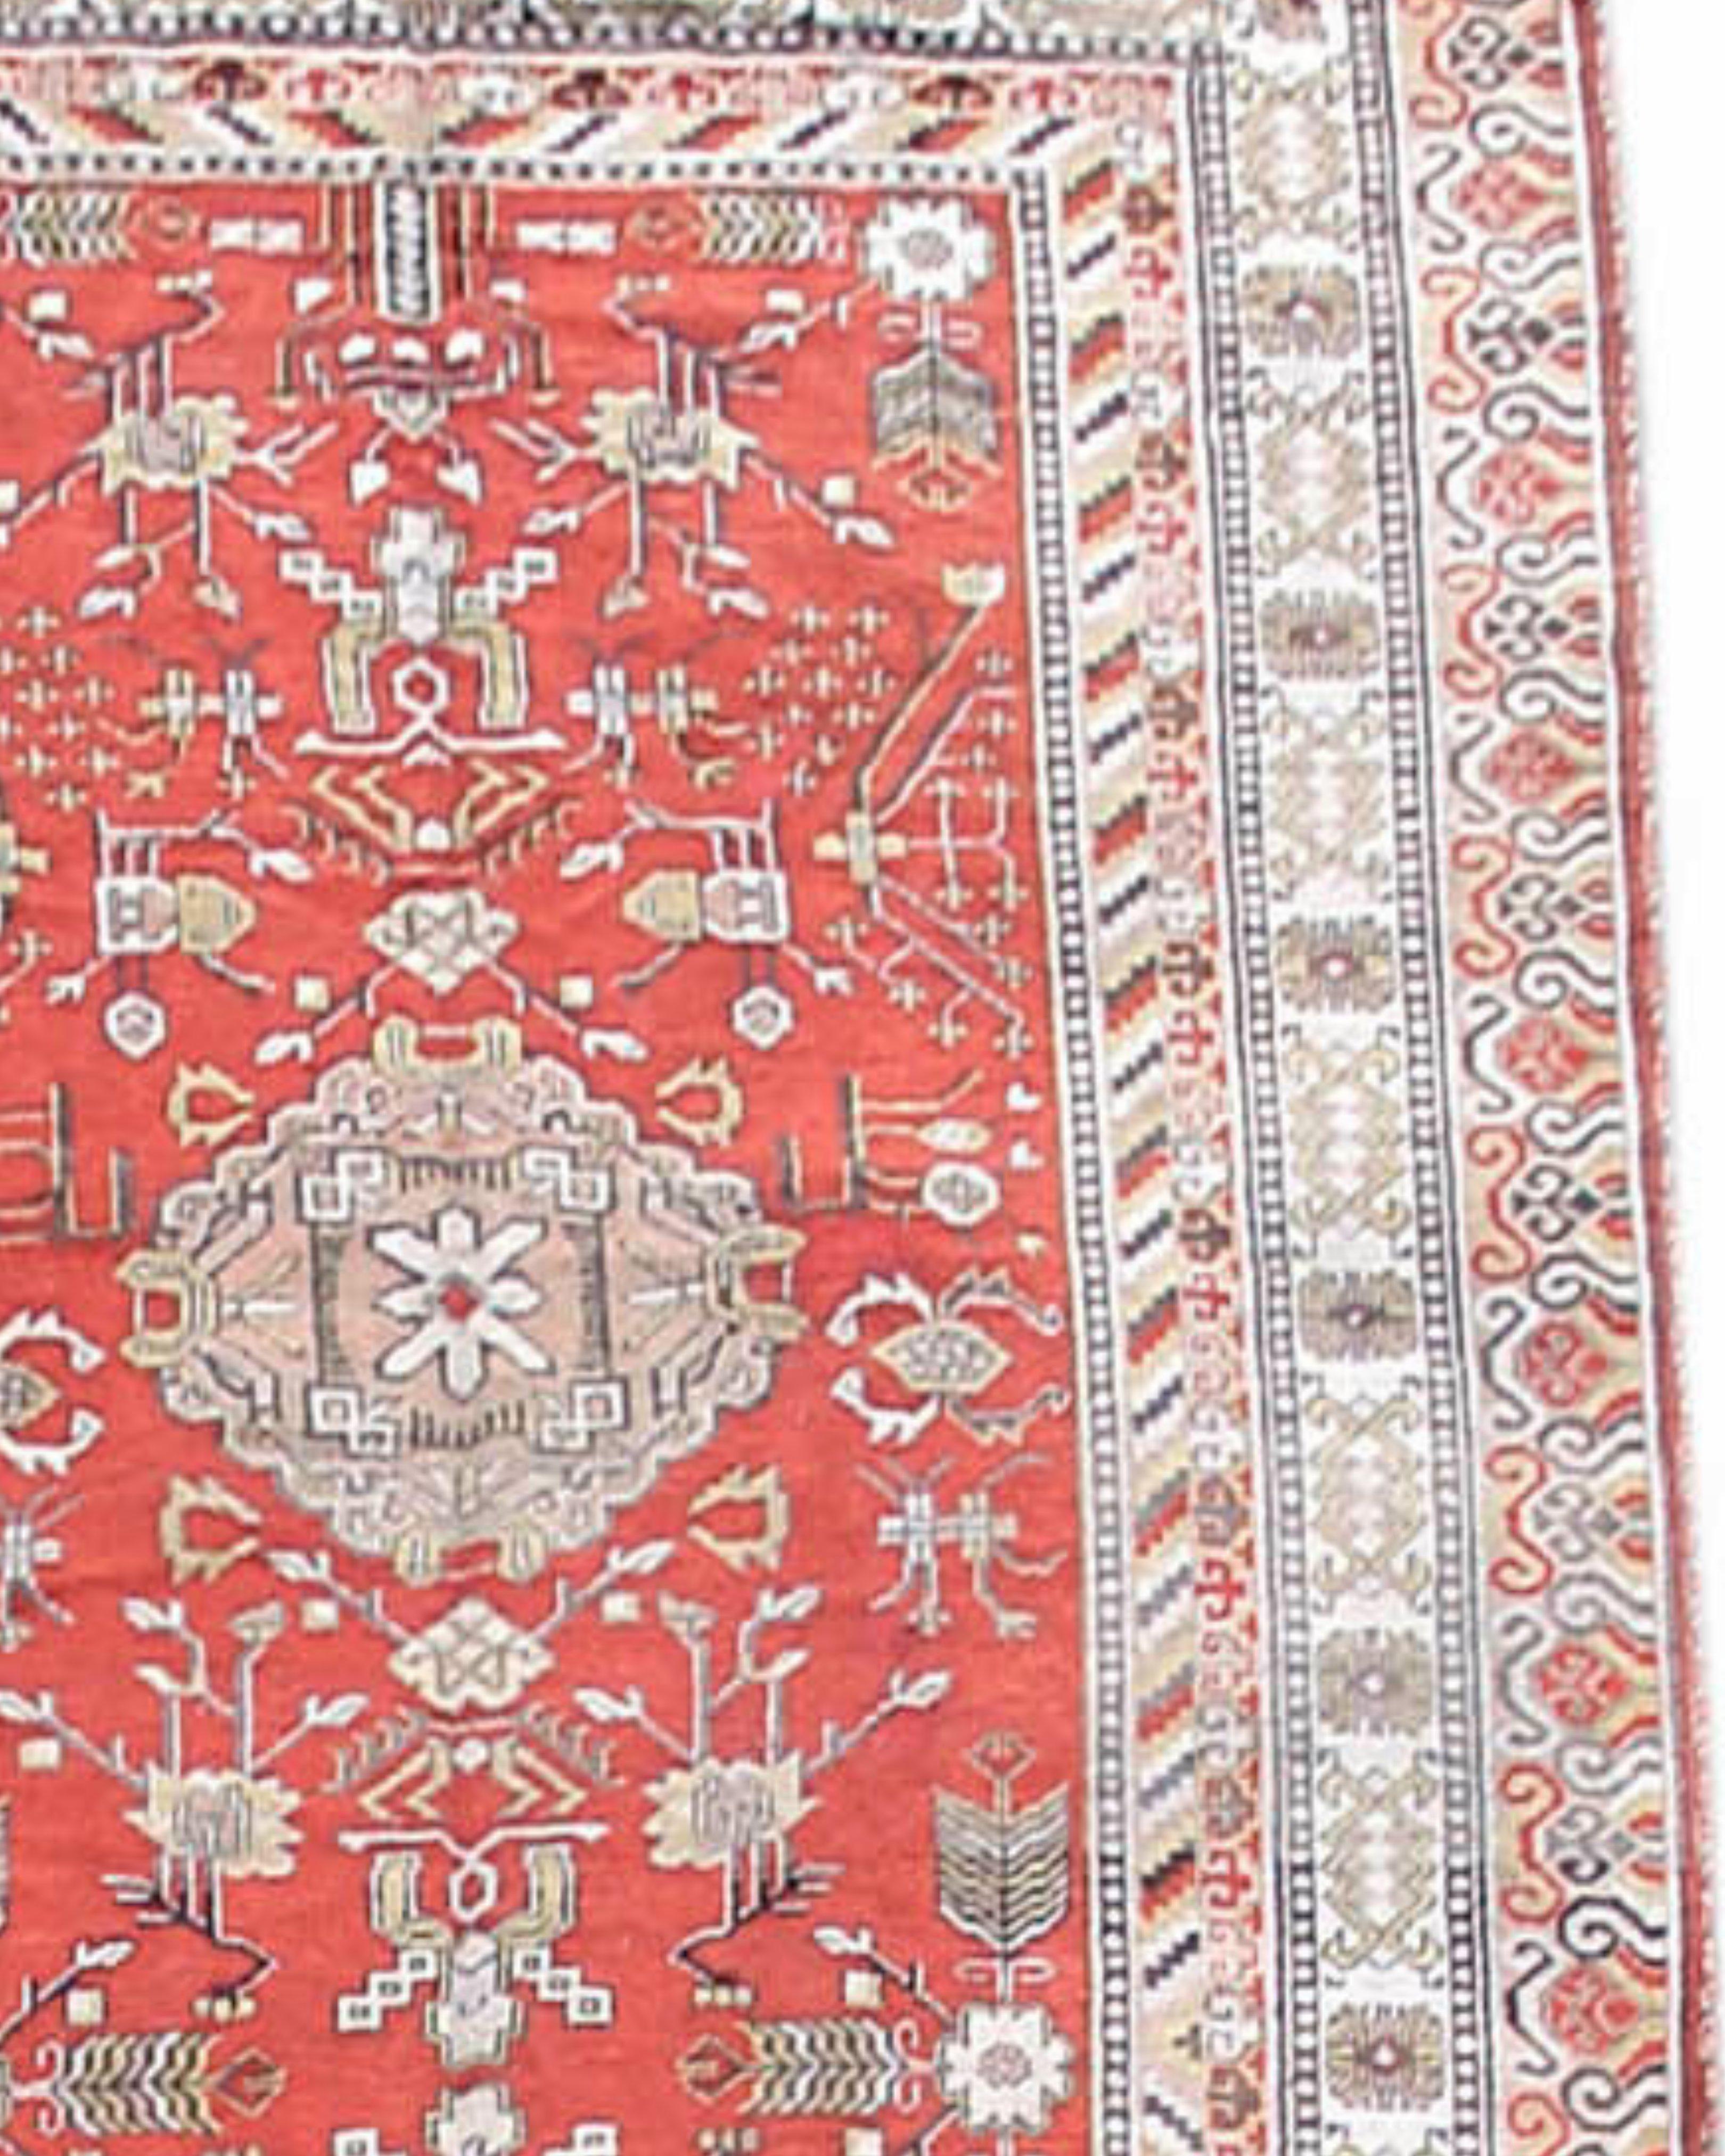 Antiker Khotan-Teppich, frühes 20. Jahrhundert

Zusätzliche Informationen:
Abmessungen: 6'7